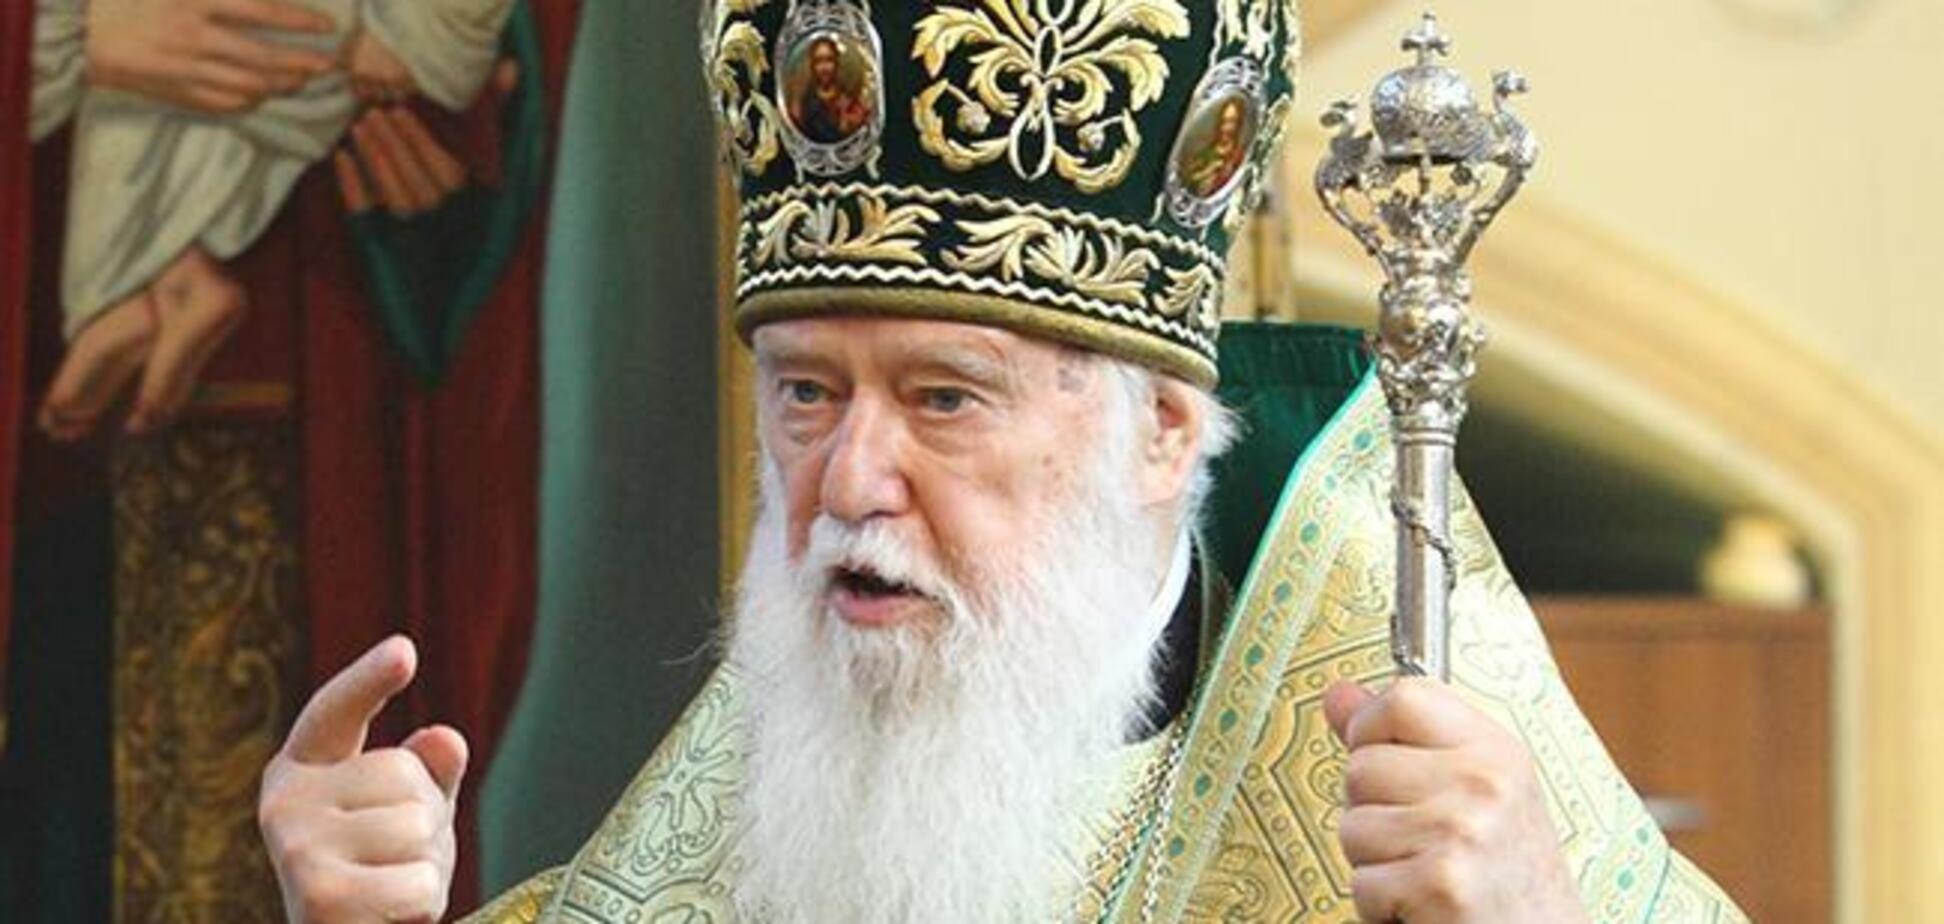 'Необратимый шаг': Филарет пояснил, зачем Константинополю экзархи в Киеве